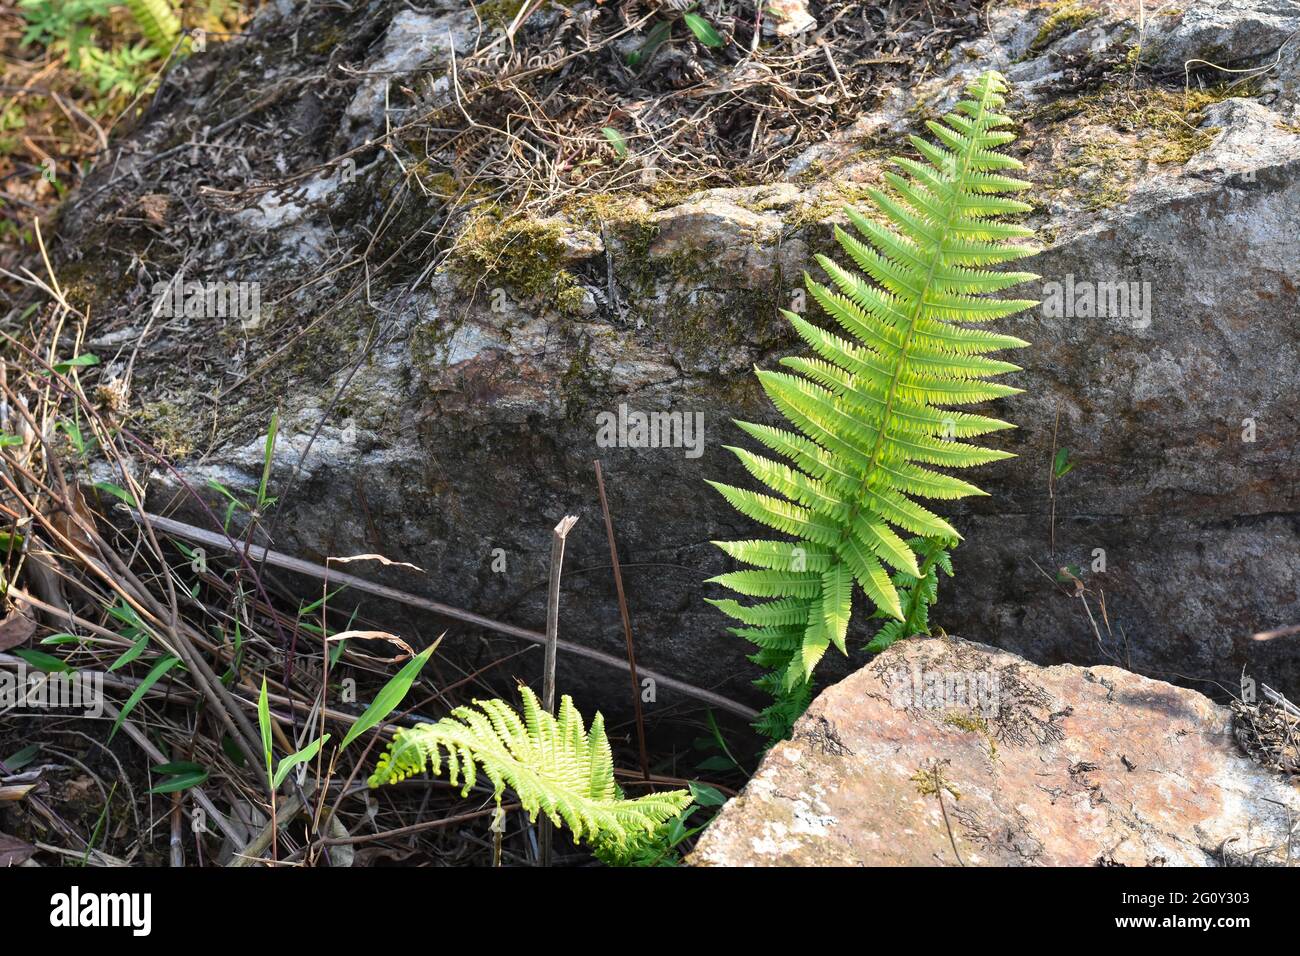 Piante di felce verdi che crescono su una roccia e pietra con tappeto di muschio nei boschi. Foto Stock